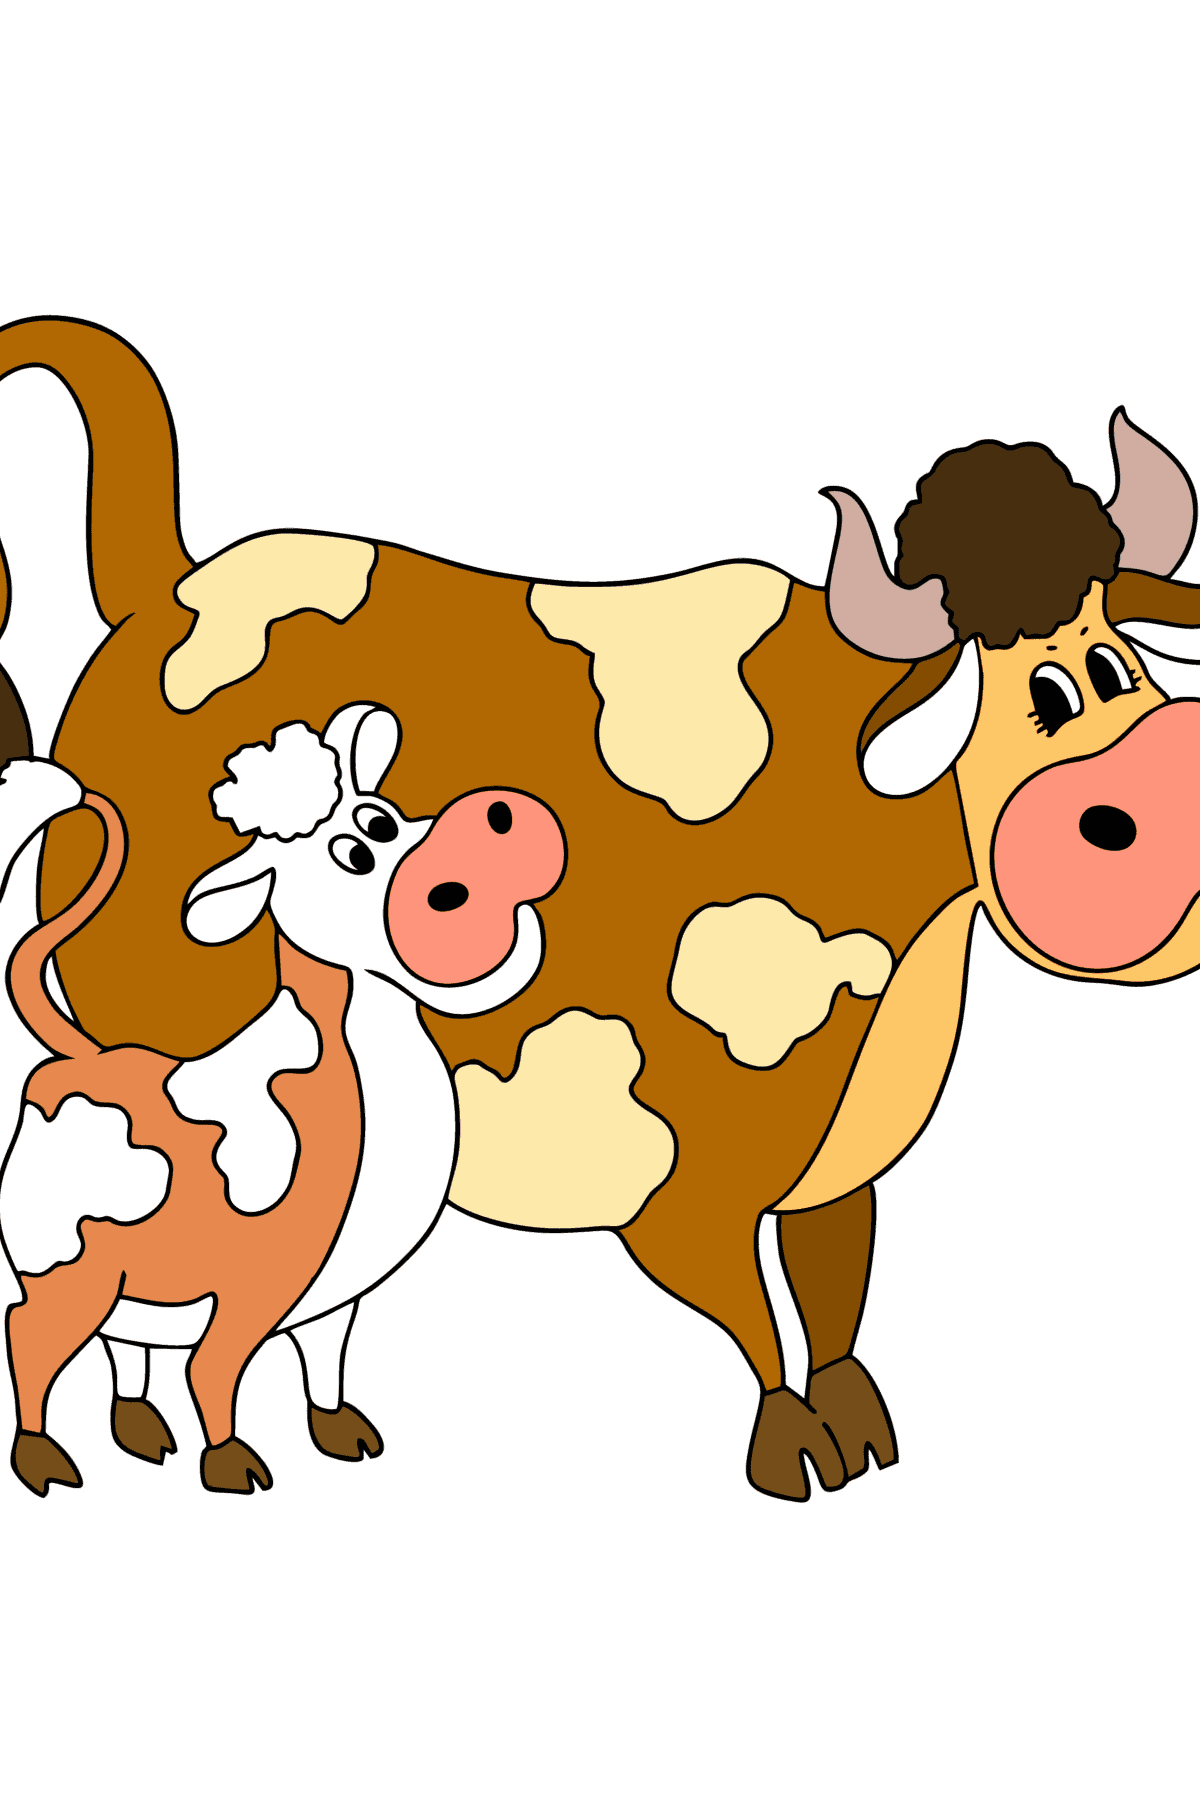 Disegno da colorare di mucca e vitello - Disegni da colorare per bambini